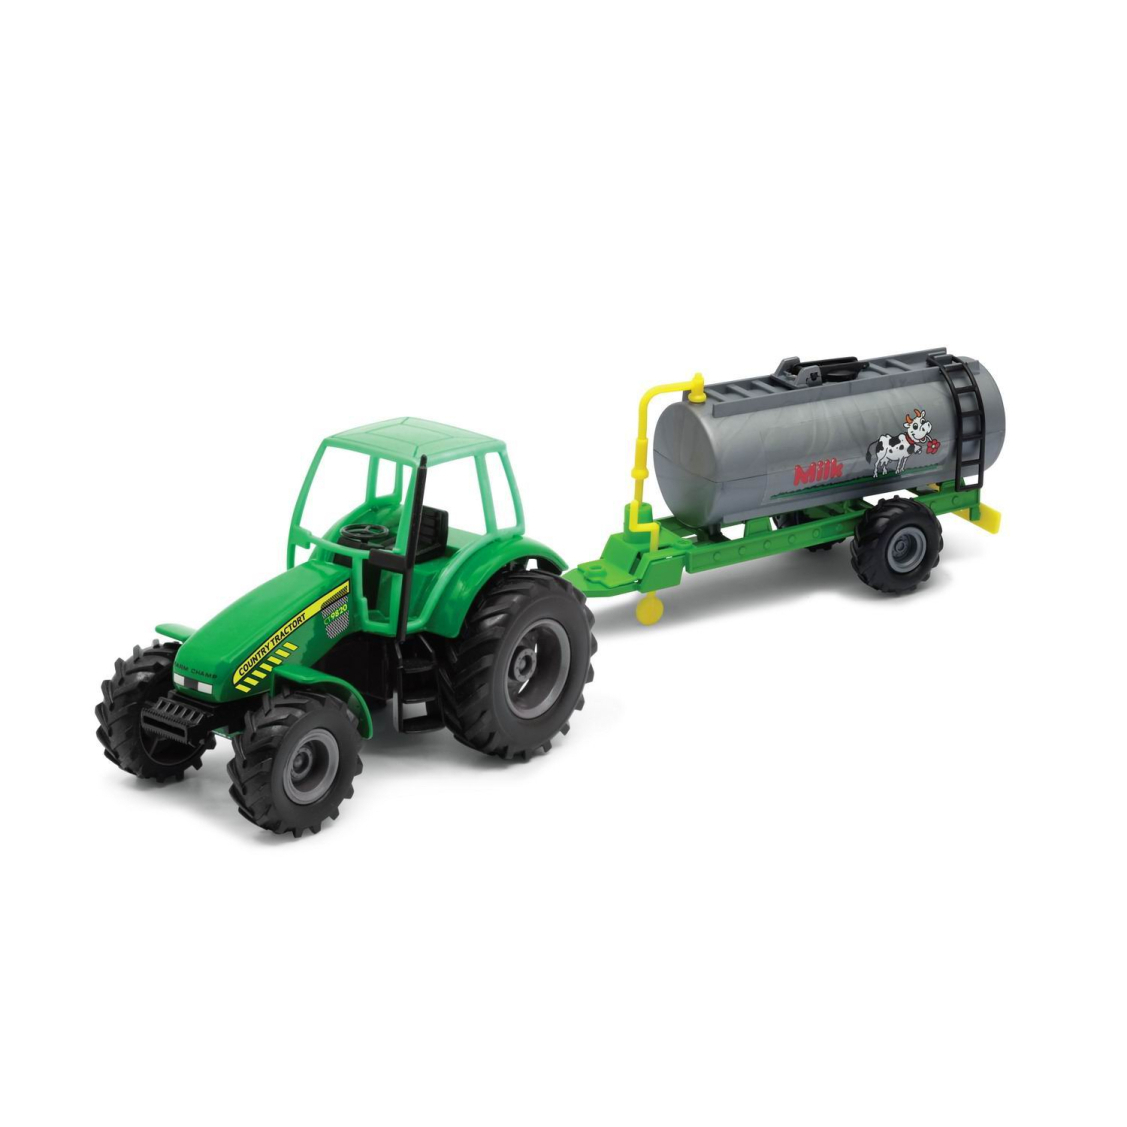 Машинка Welly Трактор с цистерной зеленый машинка перевертыш hyper skidding с управлением жестами свет масштаб 1 16 зеленый